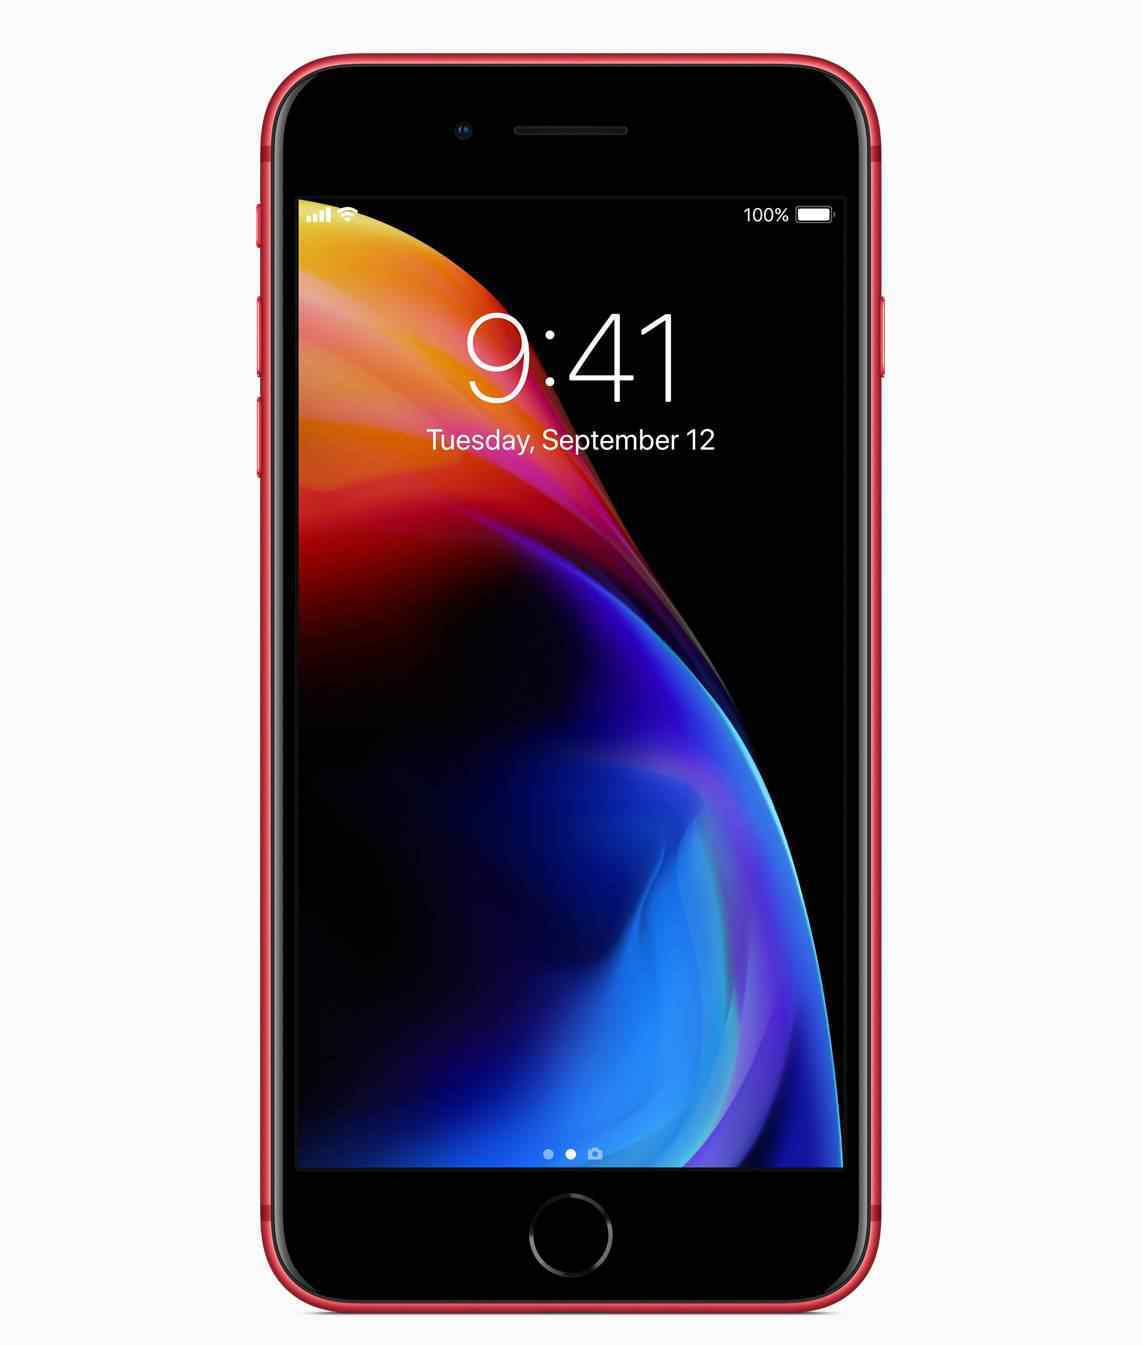 iphone8官网 苹果发布红色iPhone 8特别版  iphone8红色限量版值得入手吗？